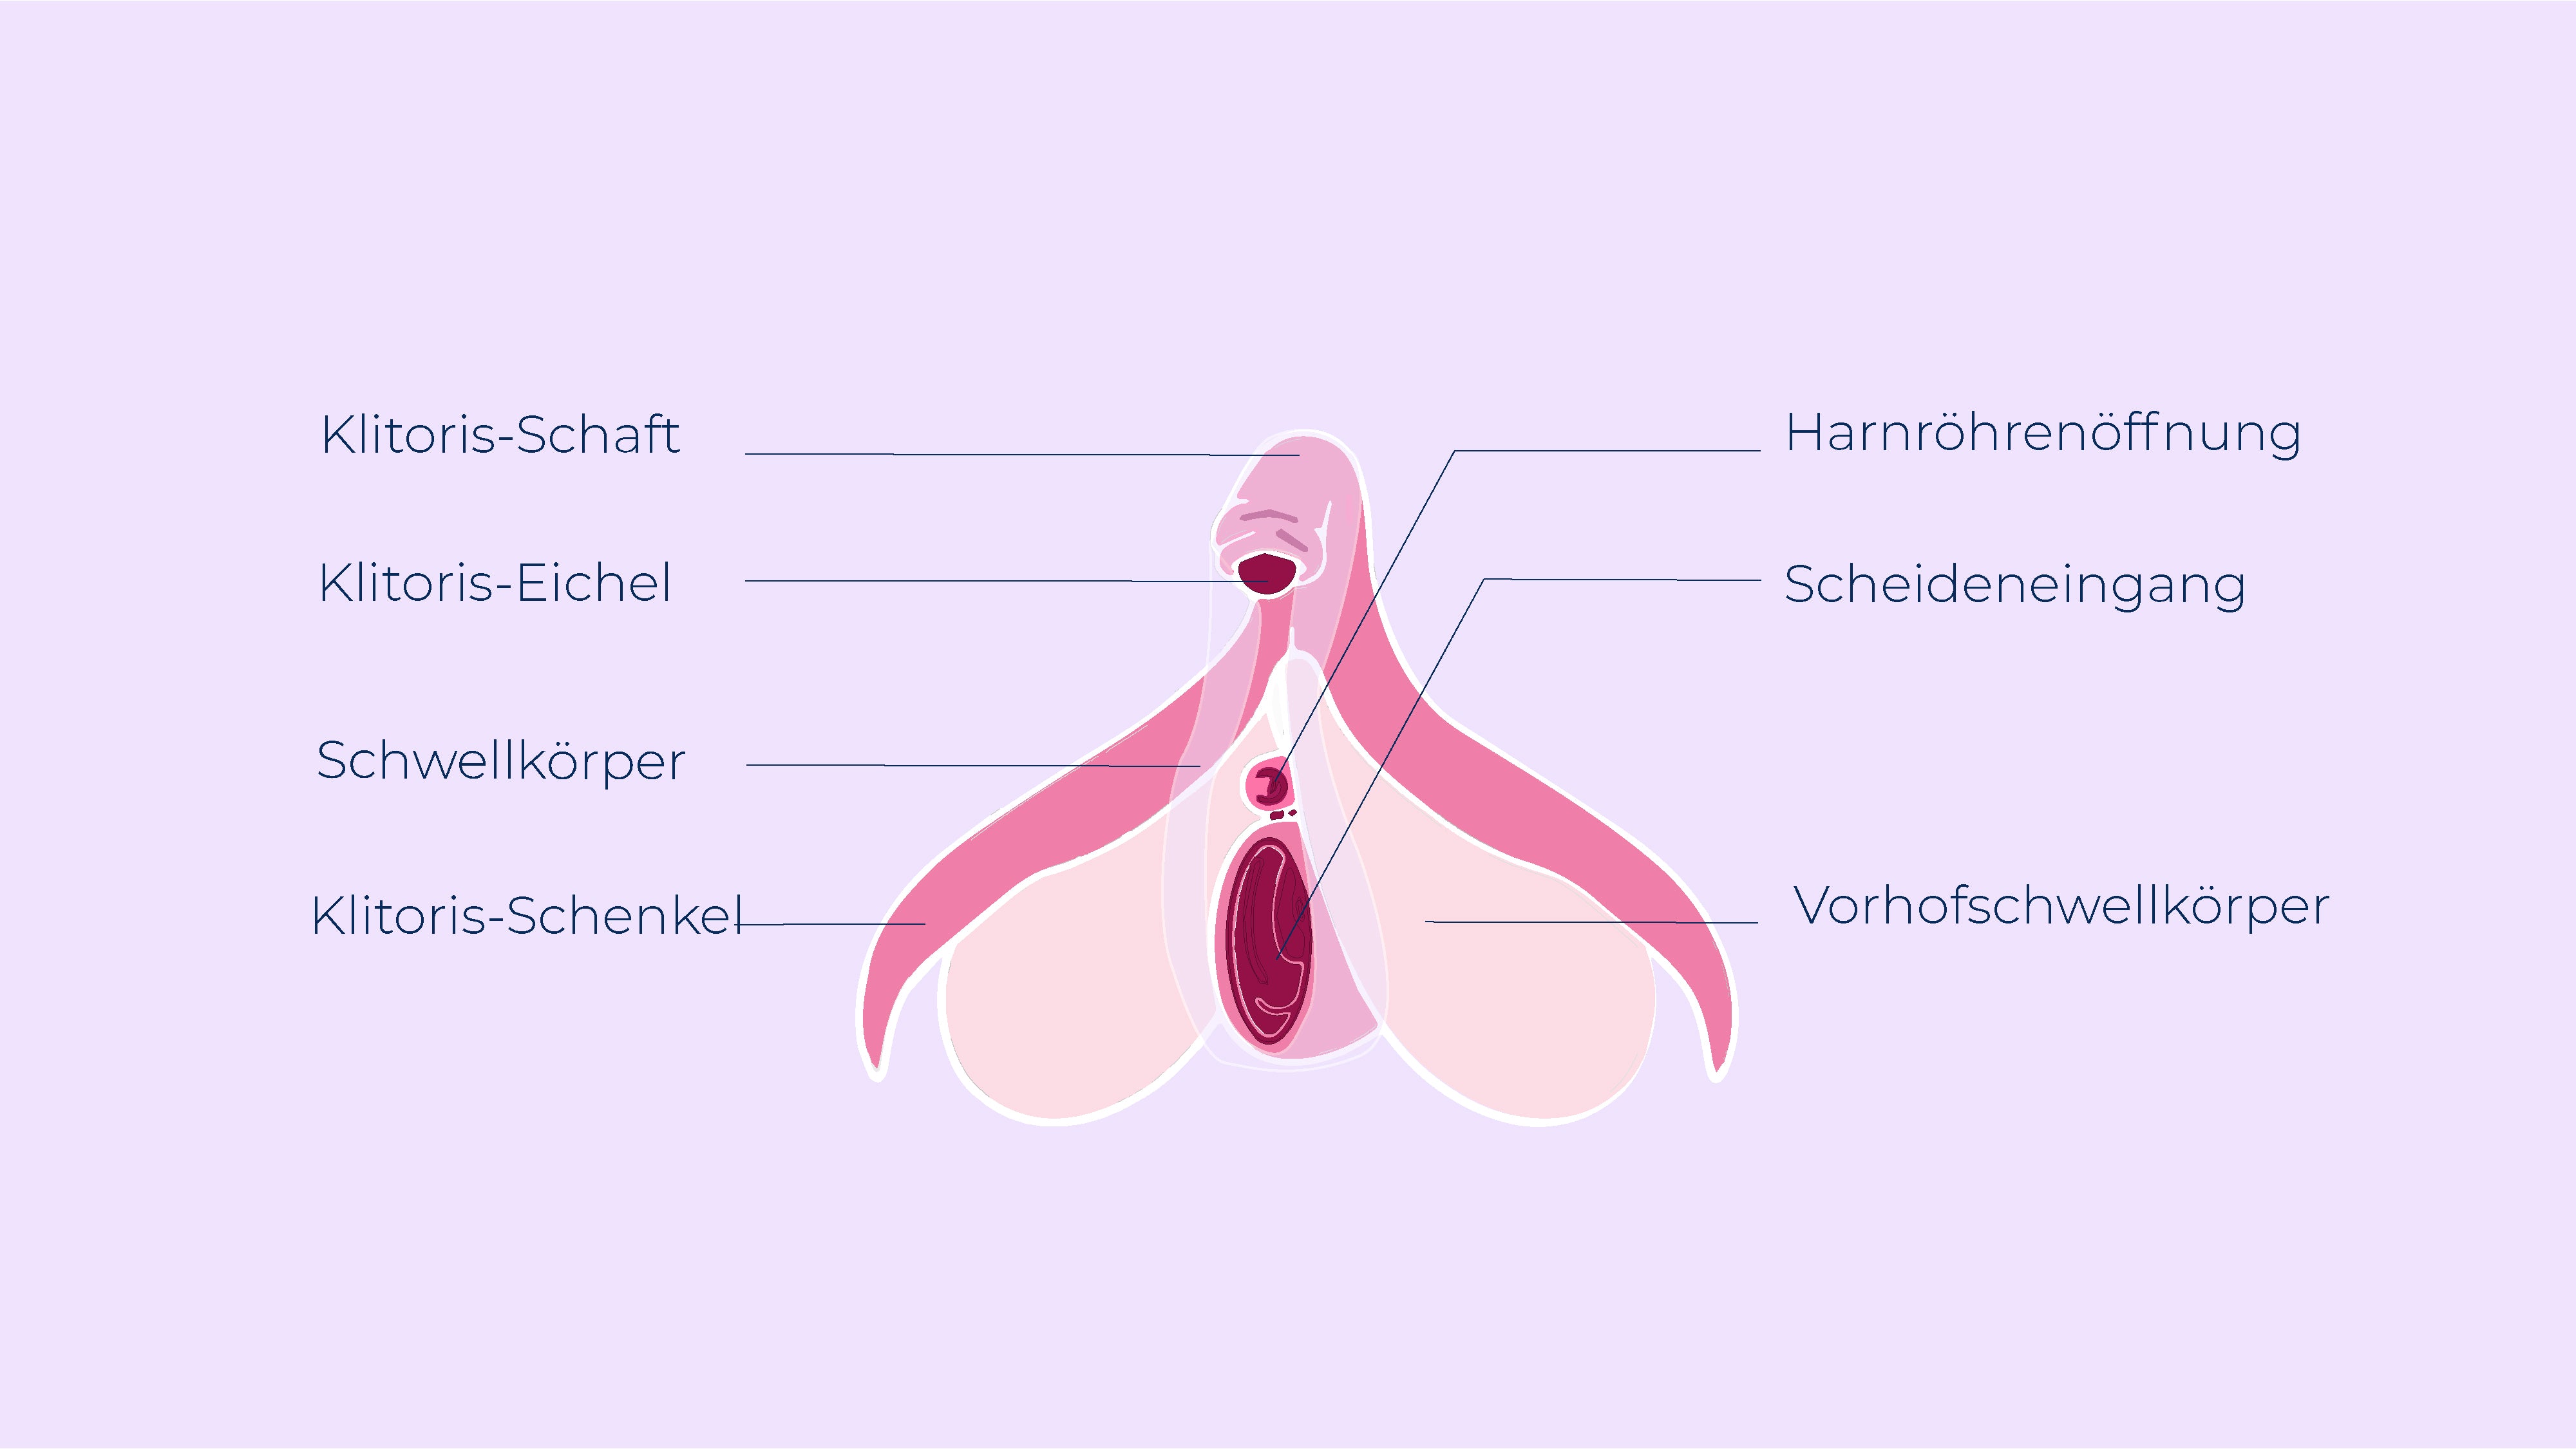 Erstaunliche Fakten über die Klitoris, Anatomie Klitoris, Orgasmus Klitoris, Wo ist die Klitoris? Ovy App